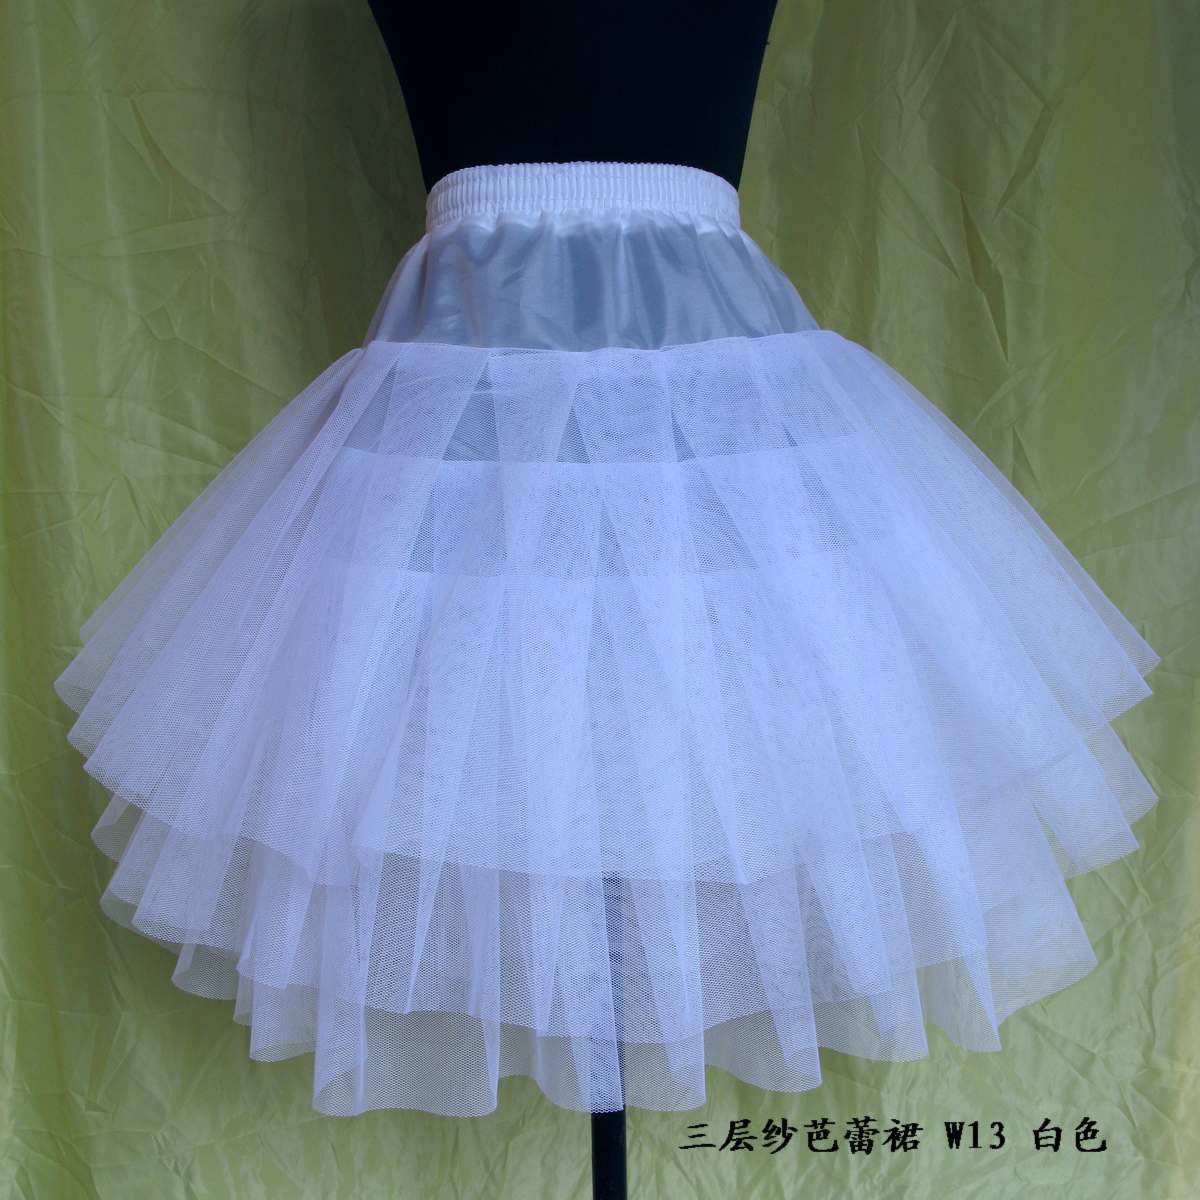 The bride dress formal dress skirt hard yarn net slip w13 white short skirt